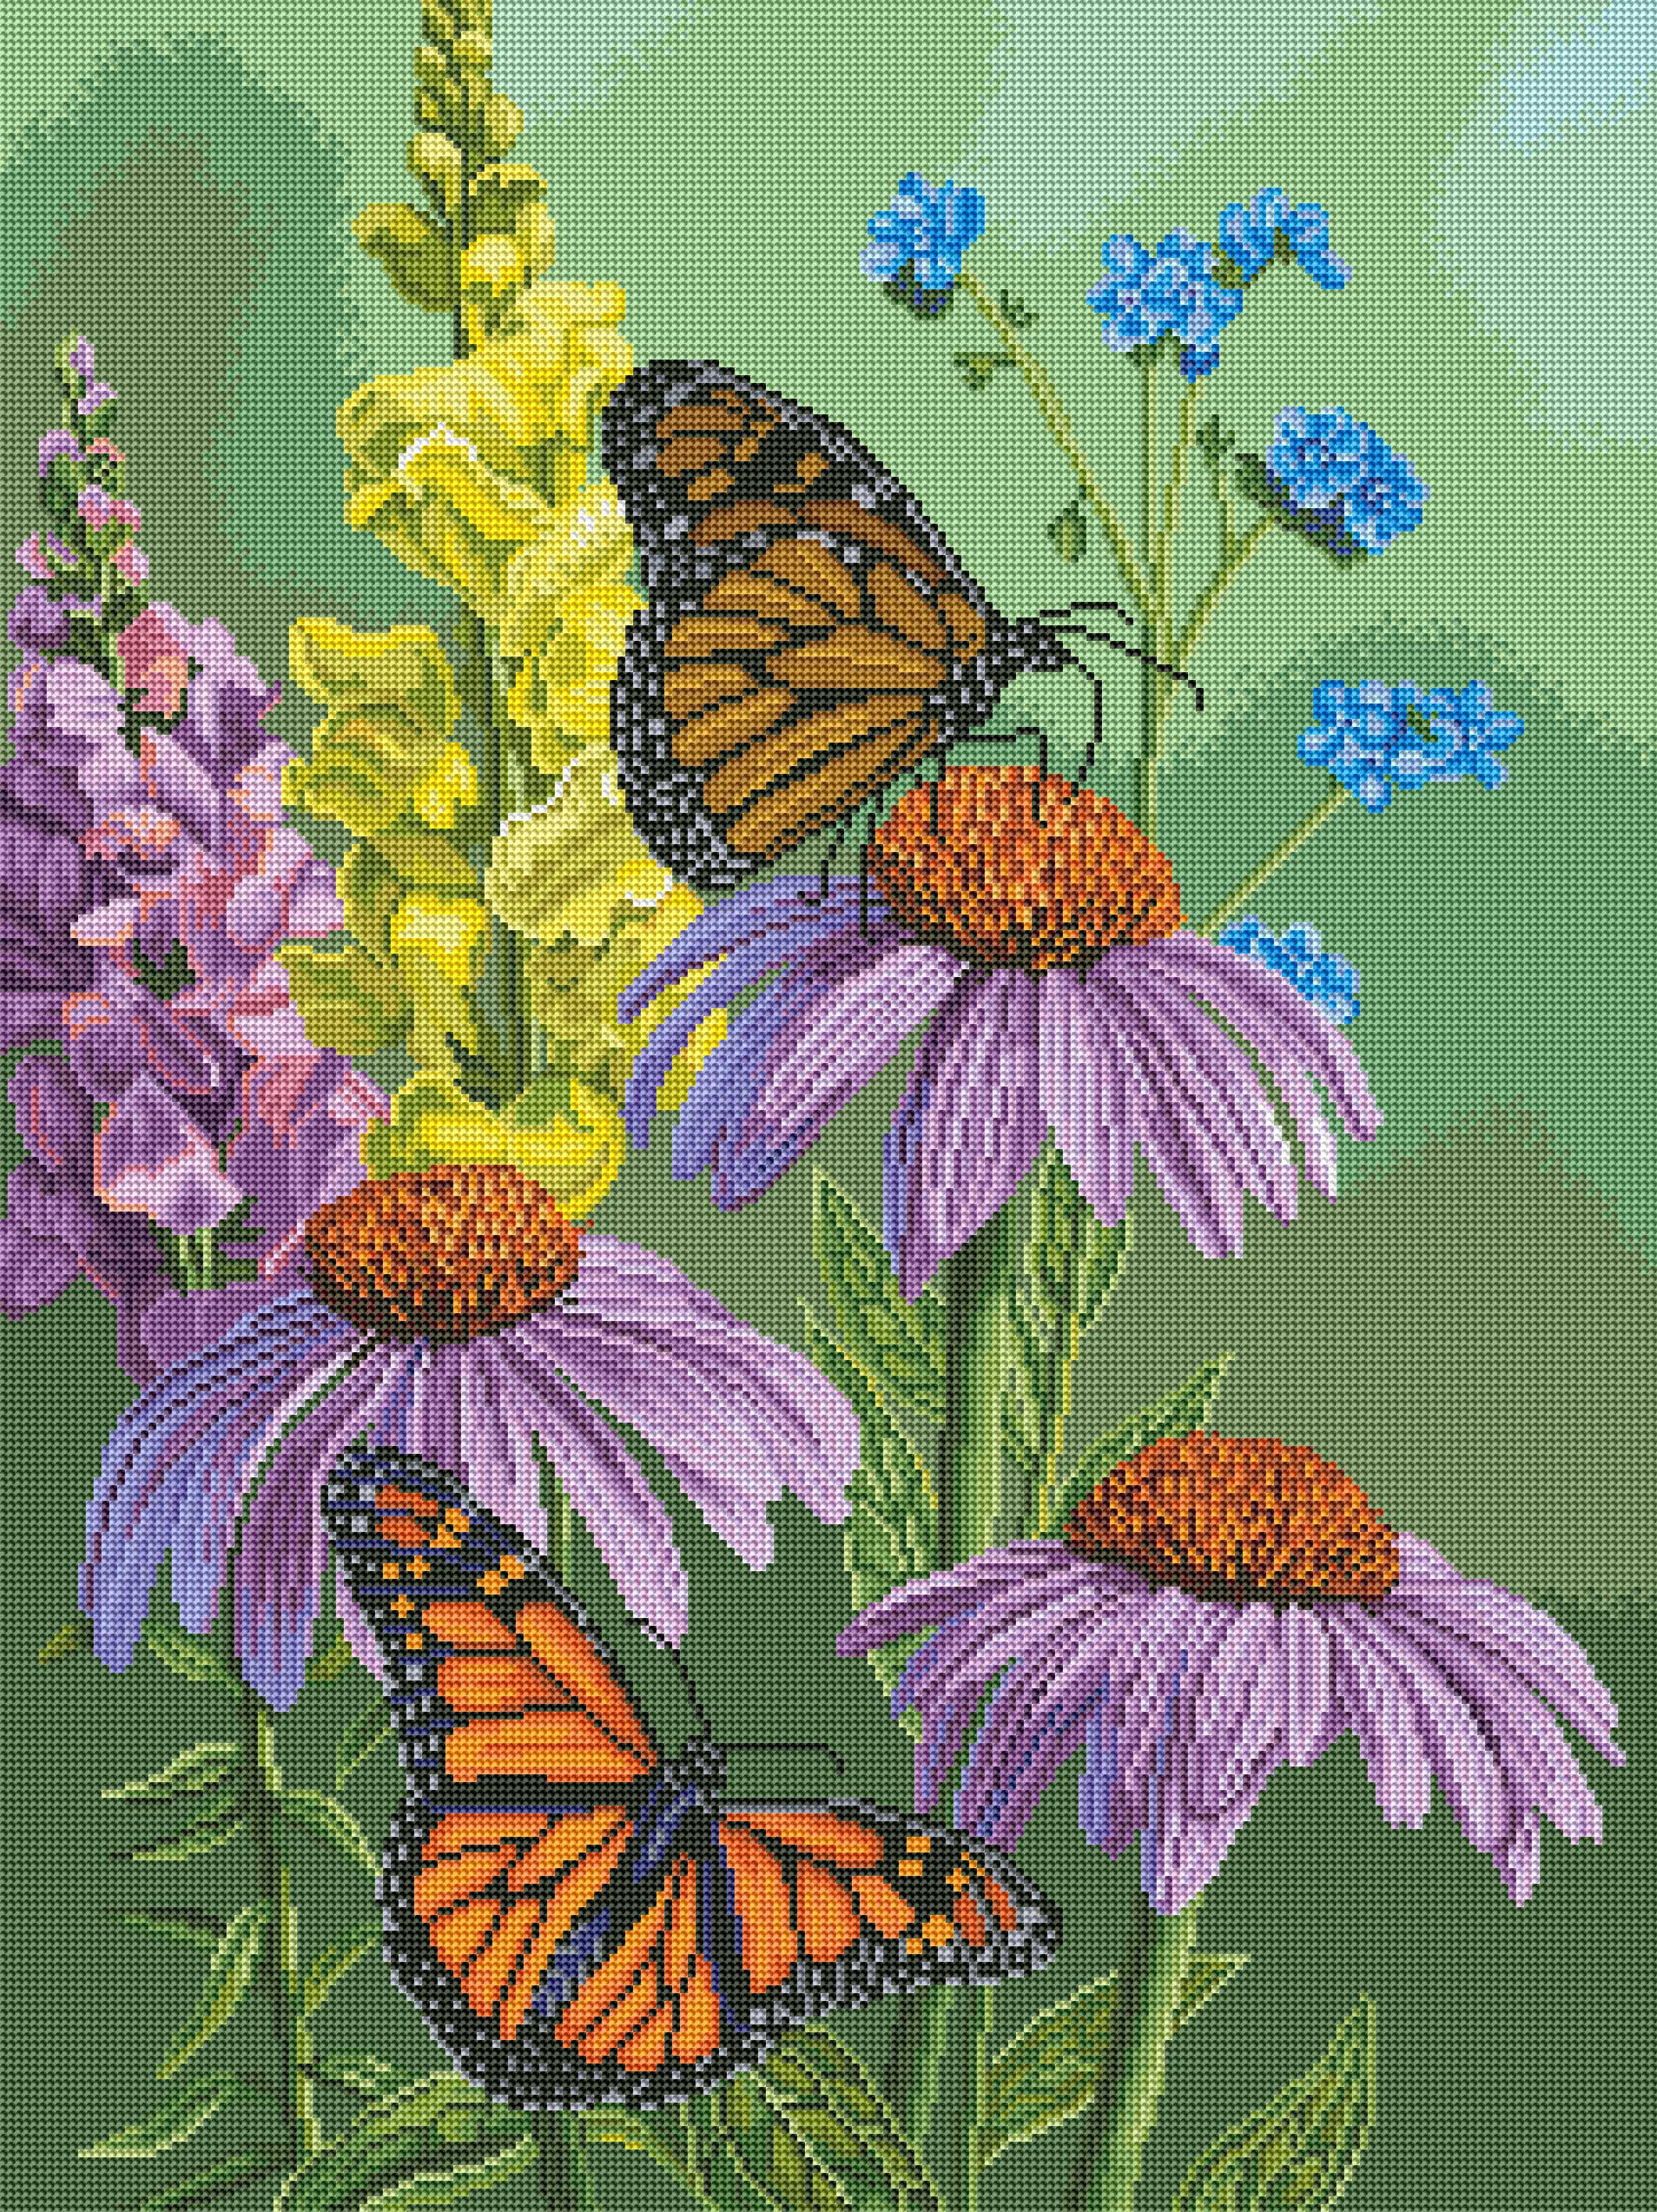 Garden Flower Monarchs